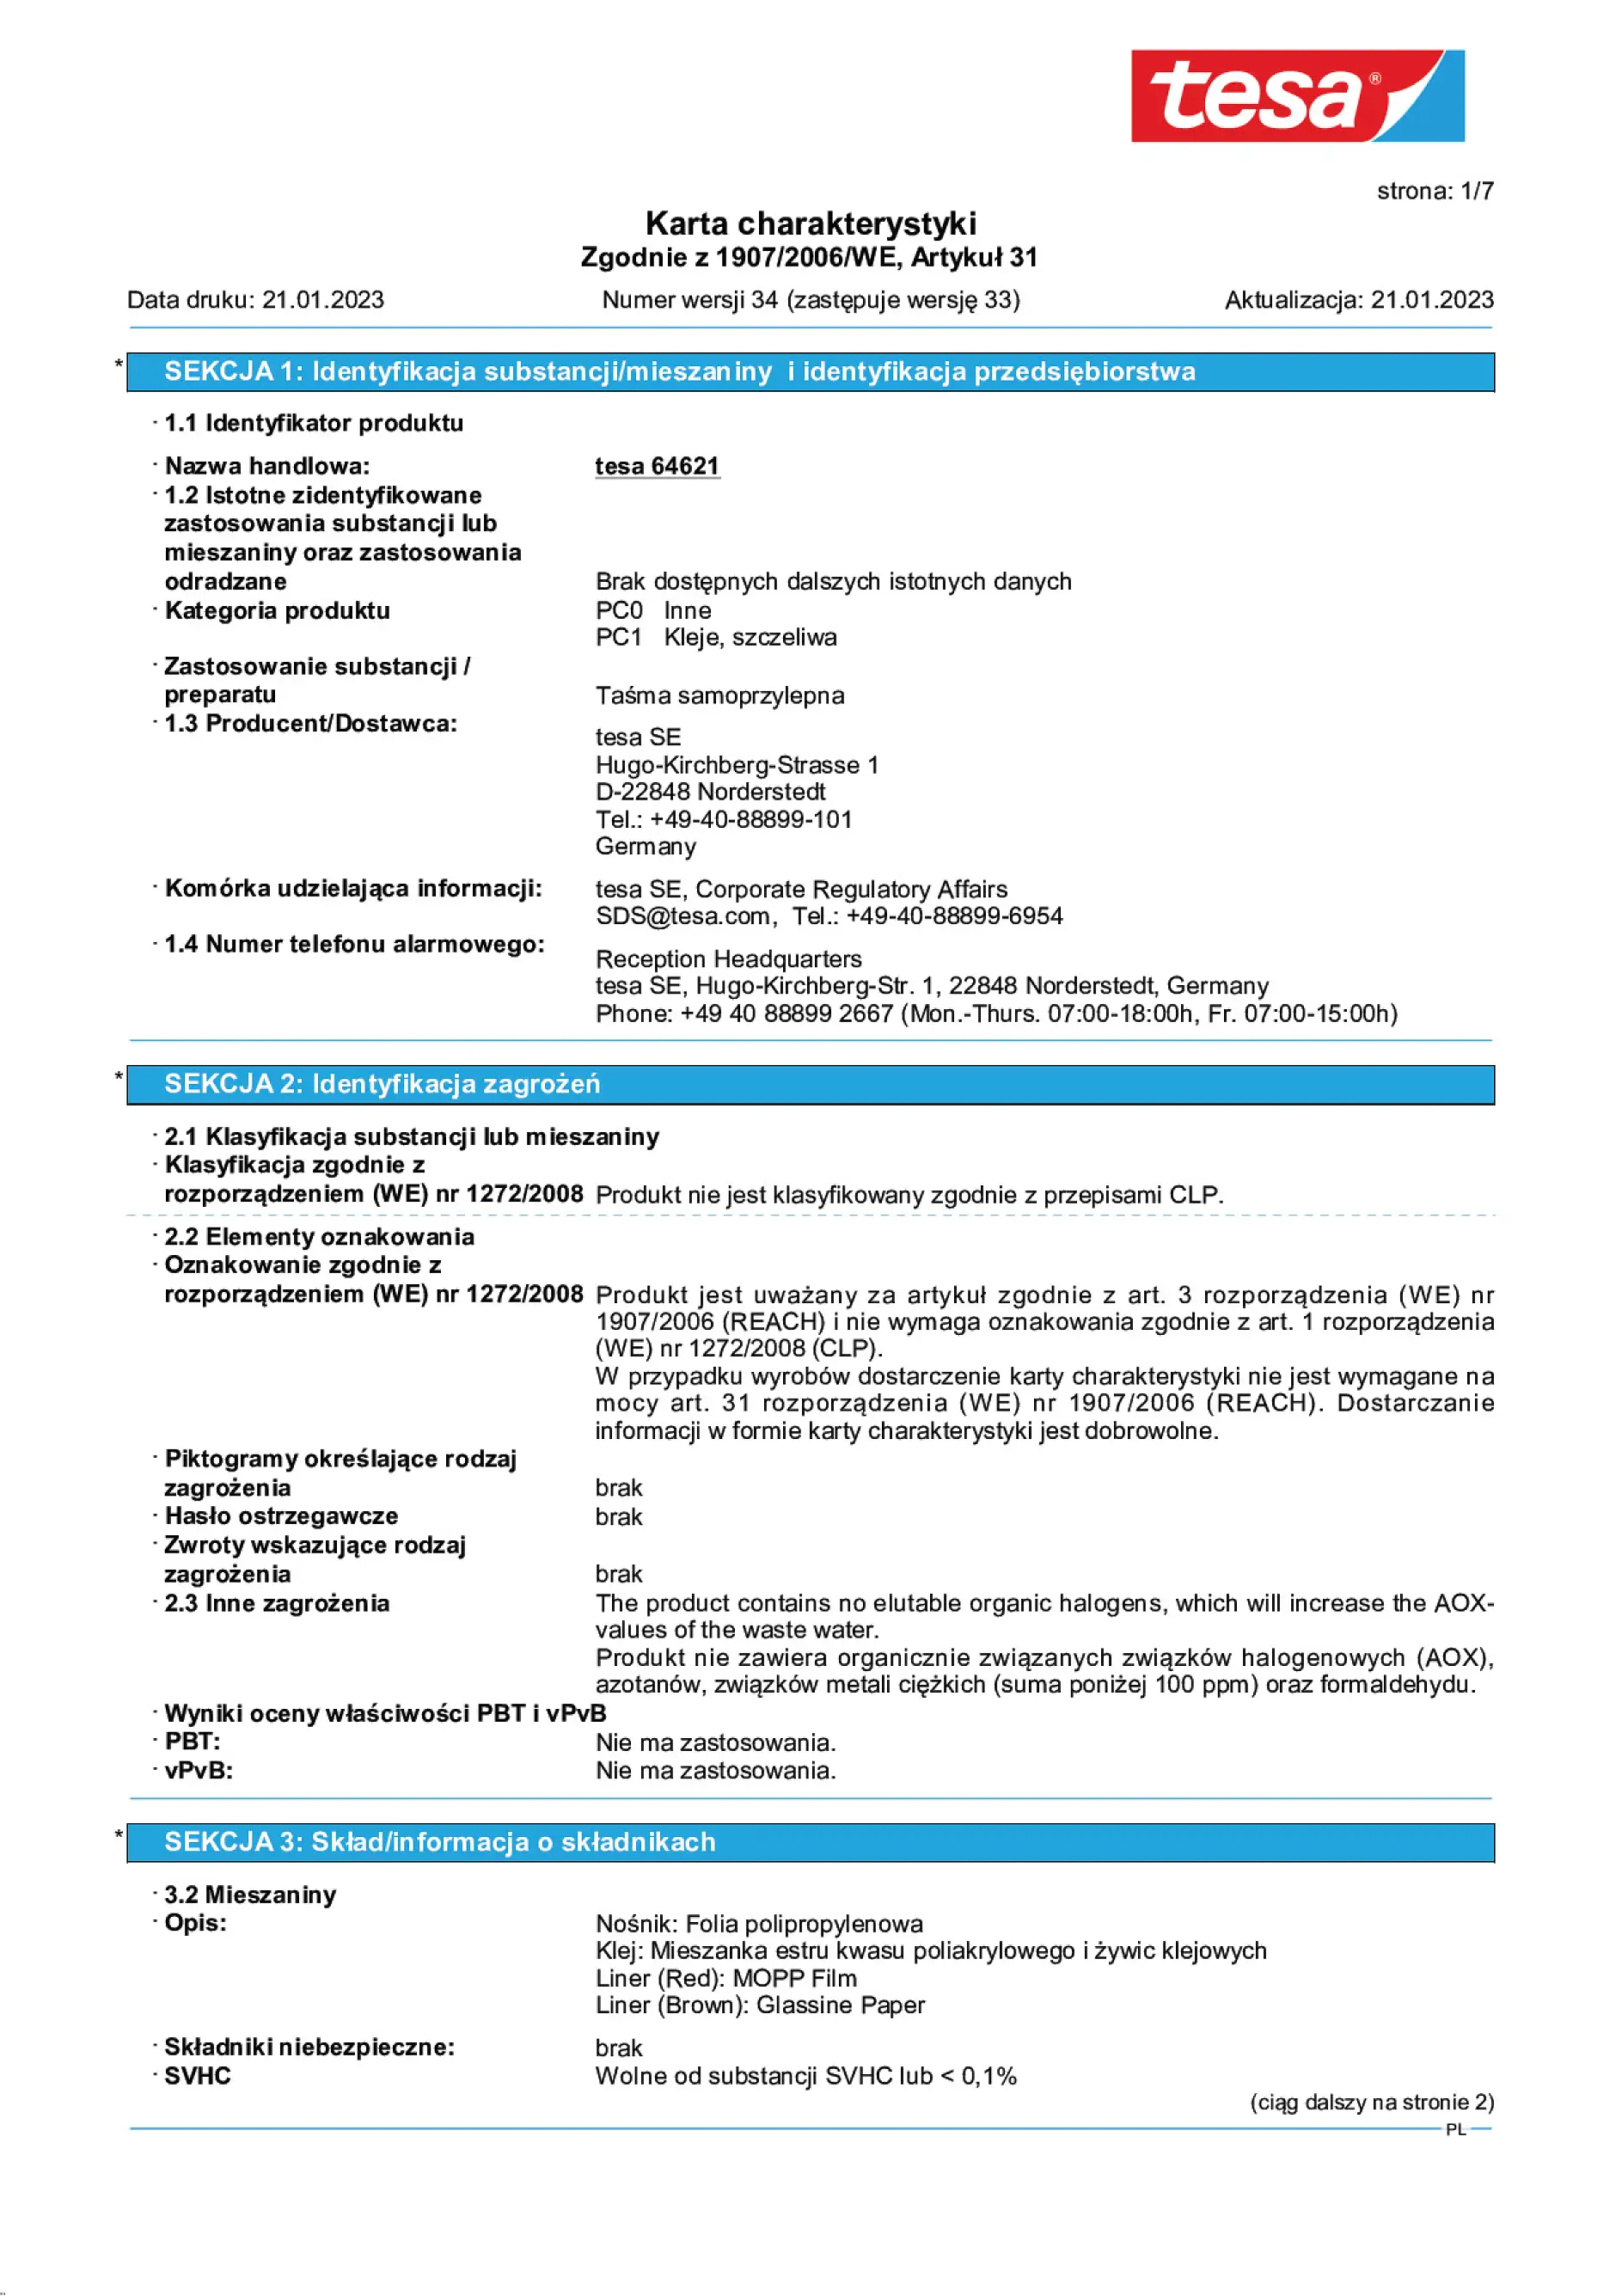 Safety data sheet_tesa® 64621_pl-PL_v34